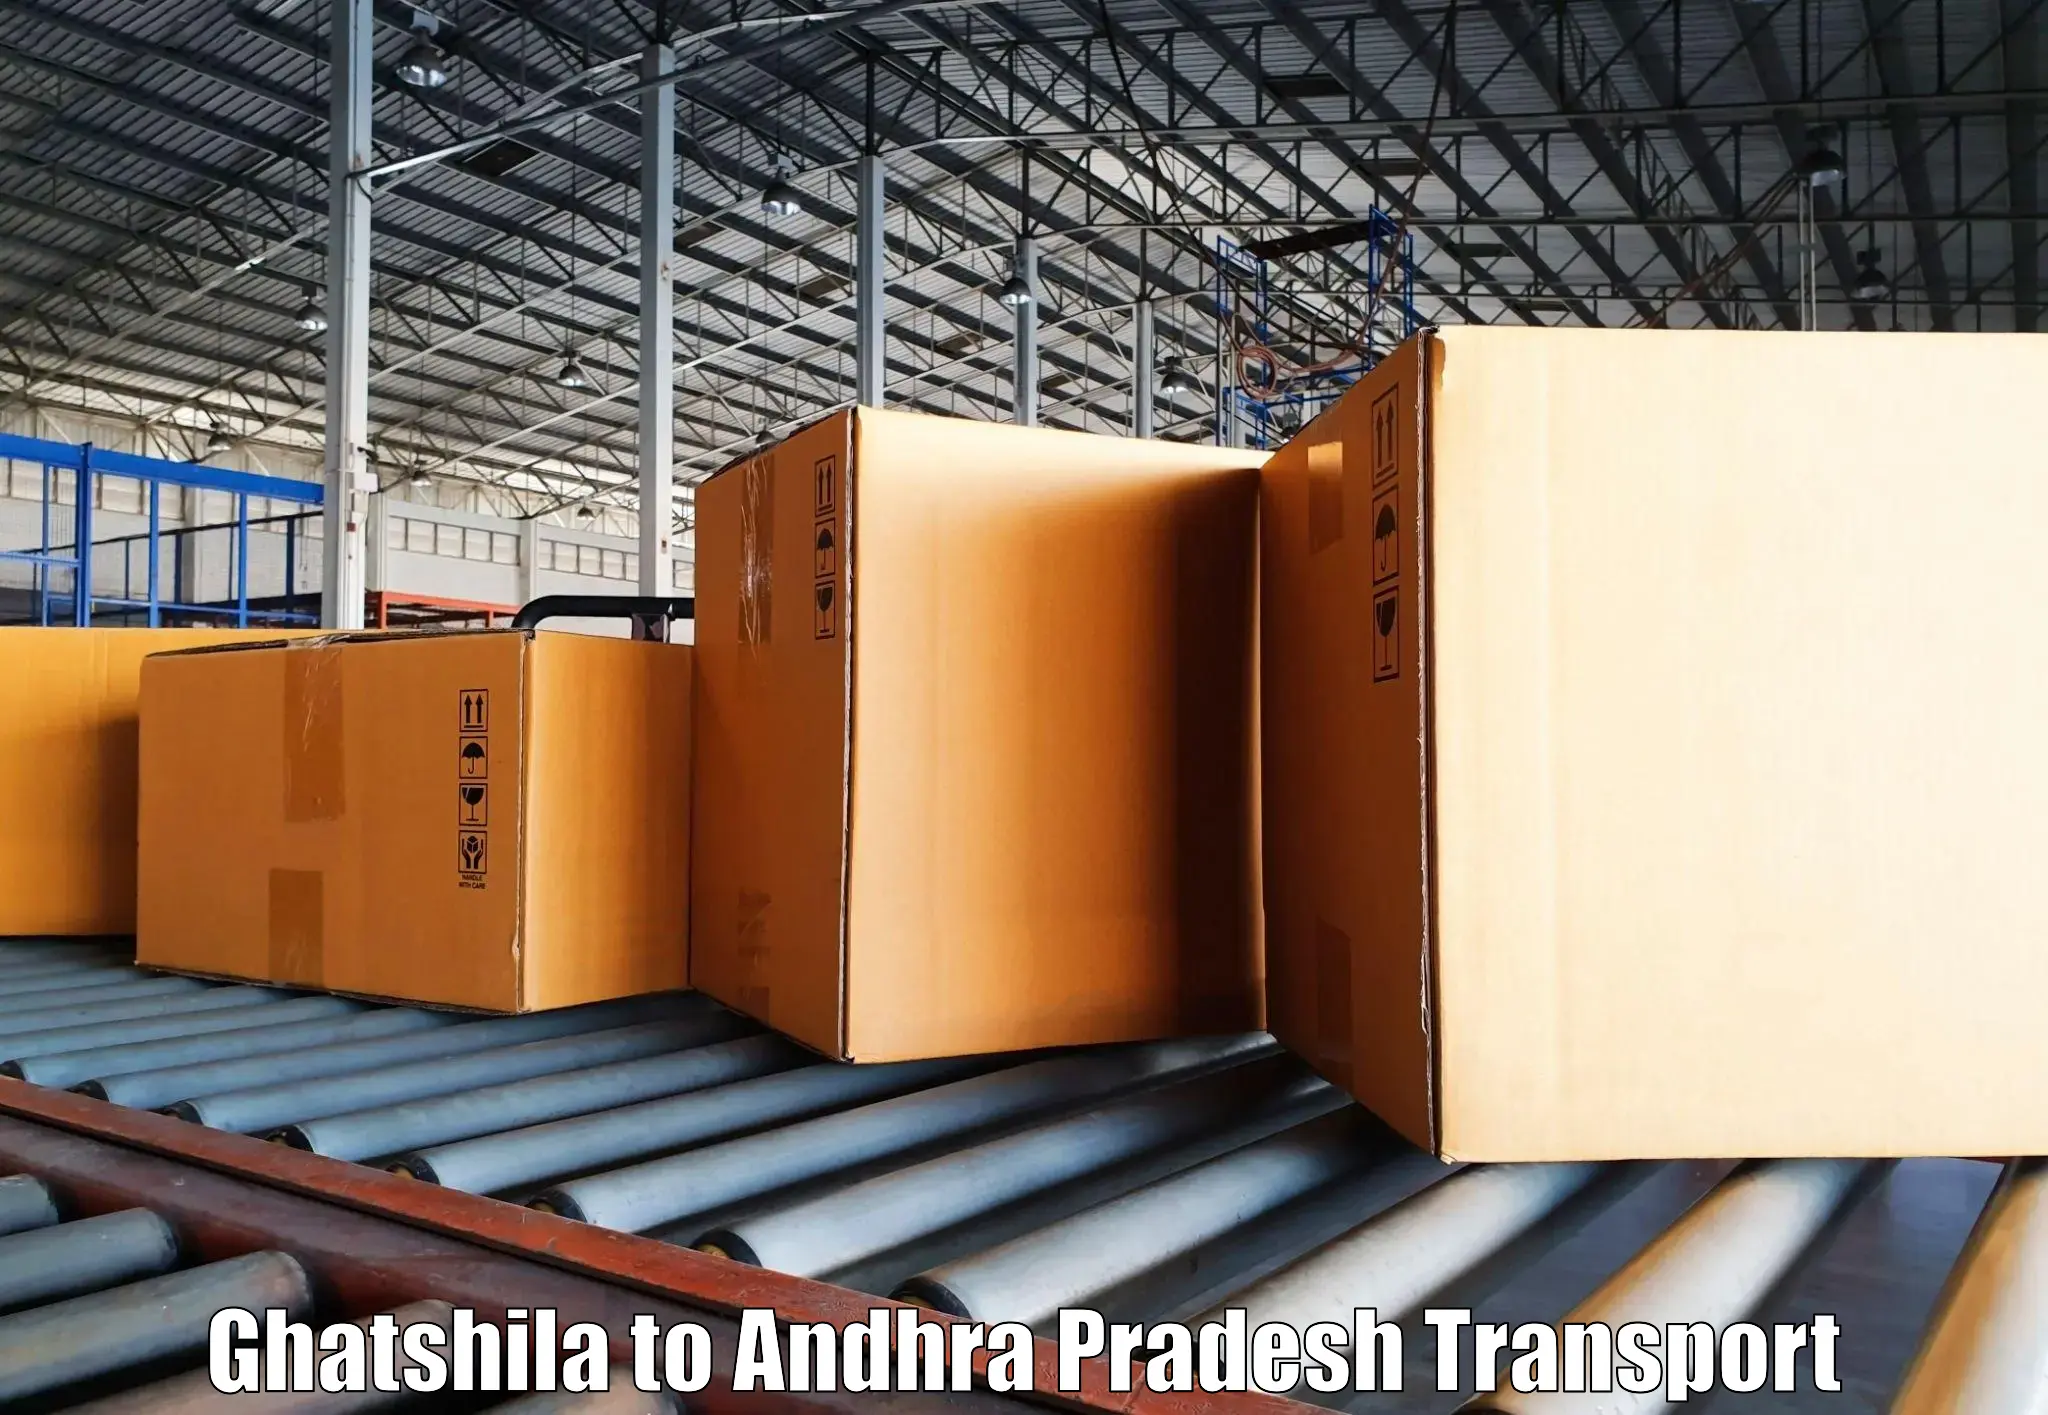 Container transportation services Ghatshila to Ichchapuram